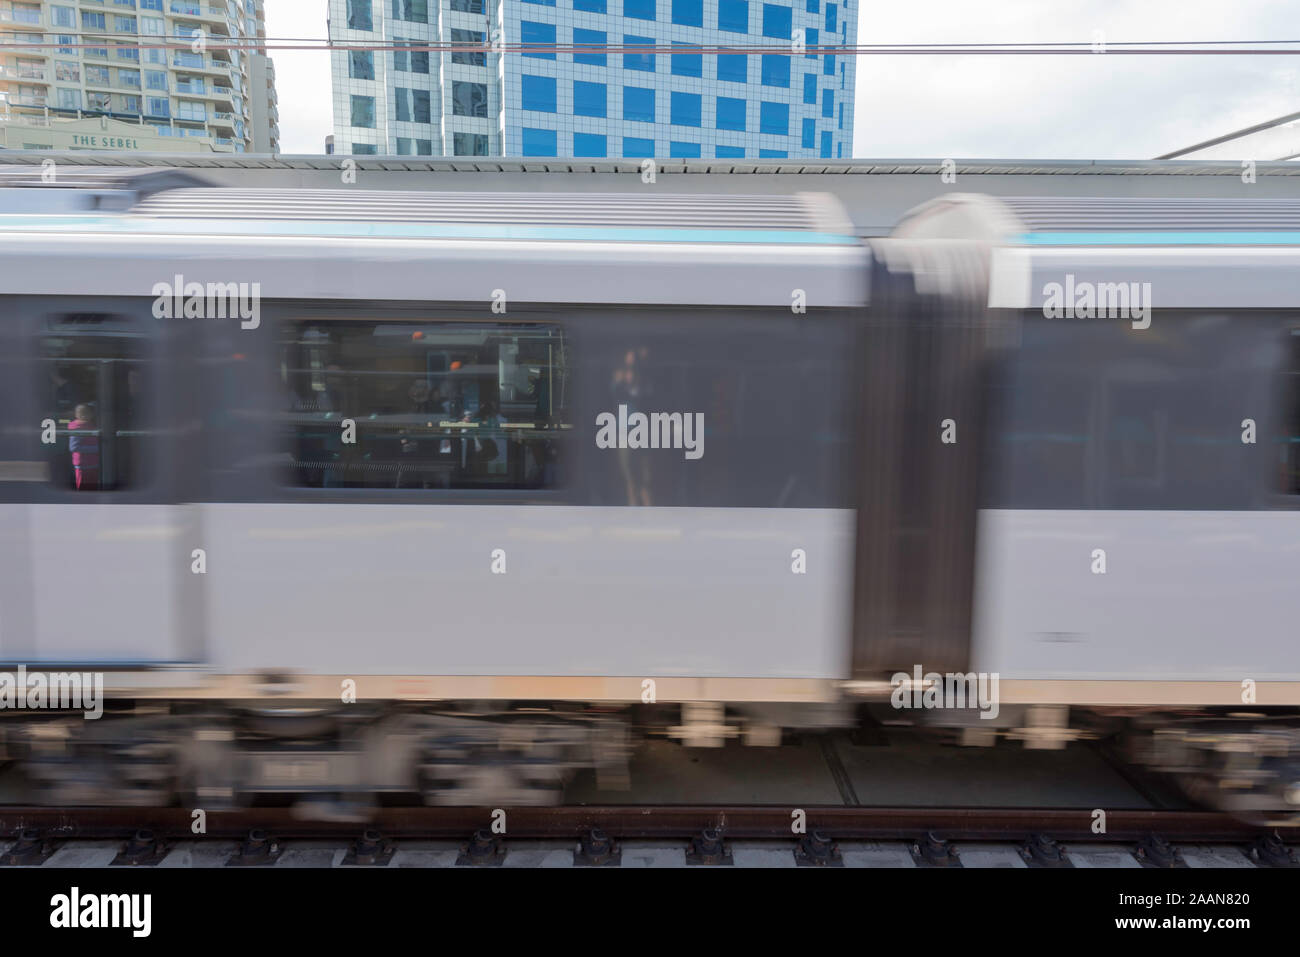 Ein anonymer nicht markierten Bild des rasenden Single Deck Zug von Seite auf in einem städtischen Umfeld in Sydney, Australien Stockfoto